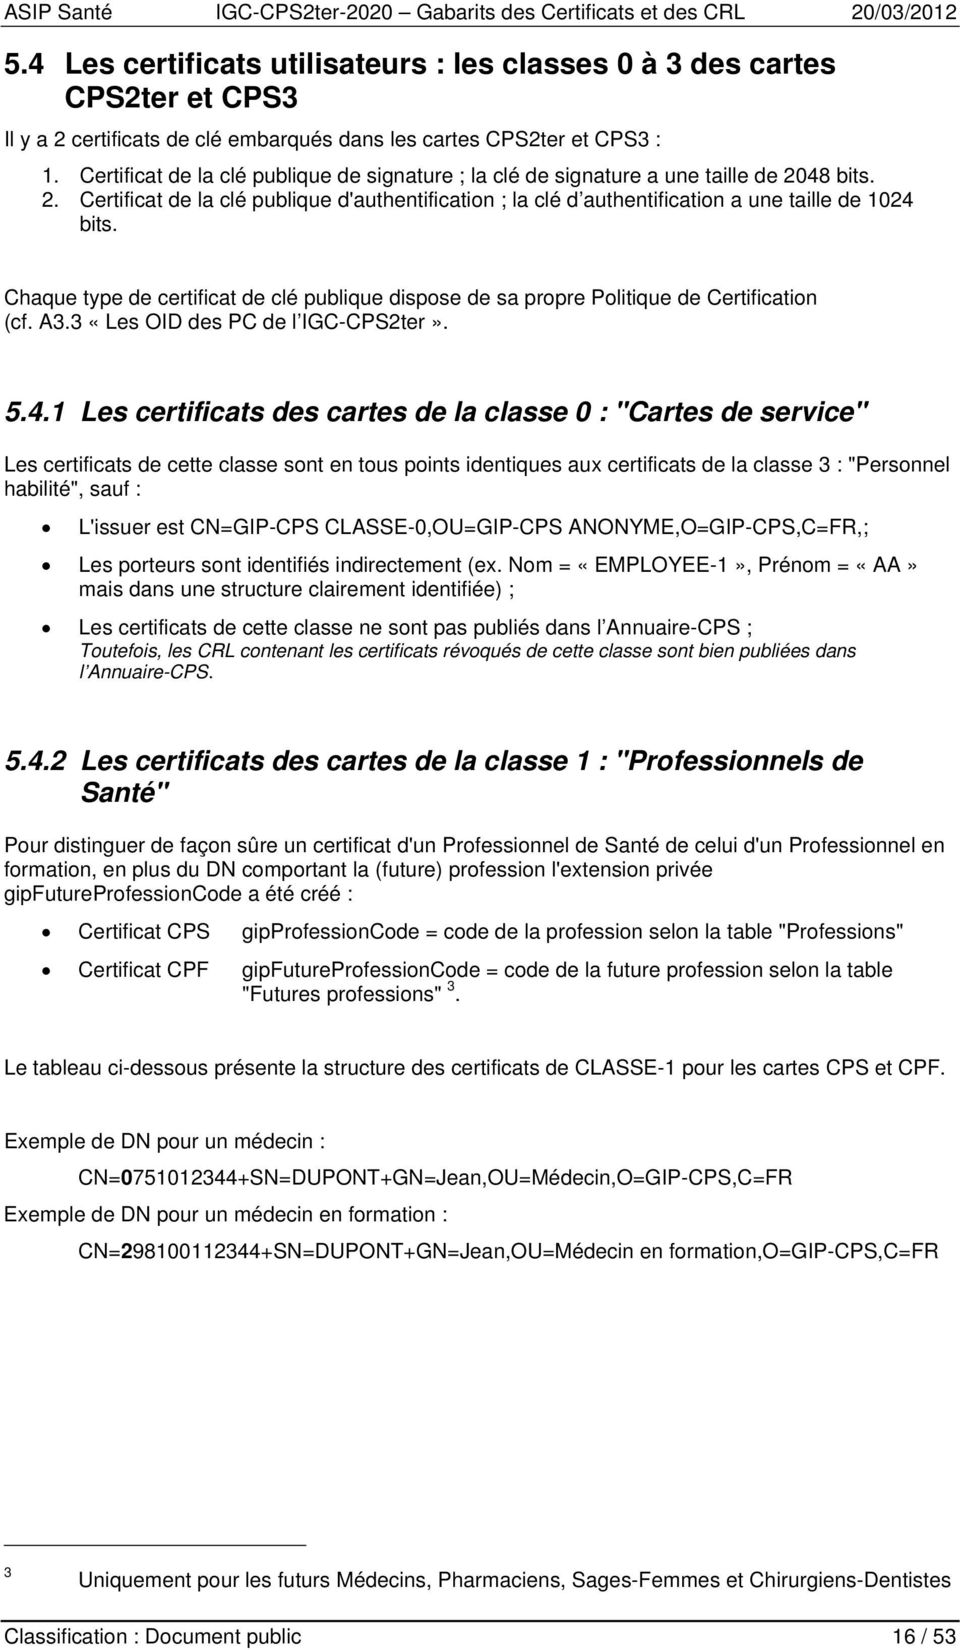 Chaque type de certificat de clé publique dispose de sa propre Politique de Certification (cf. A3.3 «Les OID des PC de l IGC-CPS2ter». 5.4.